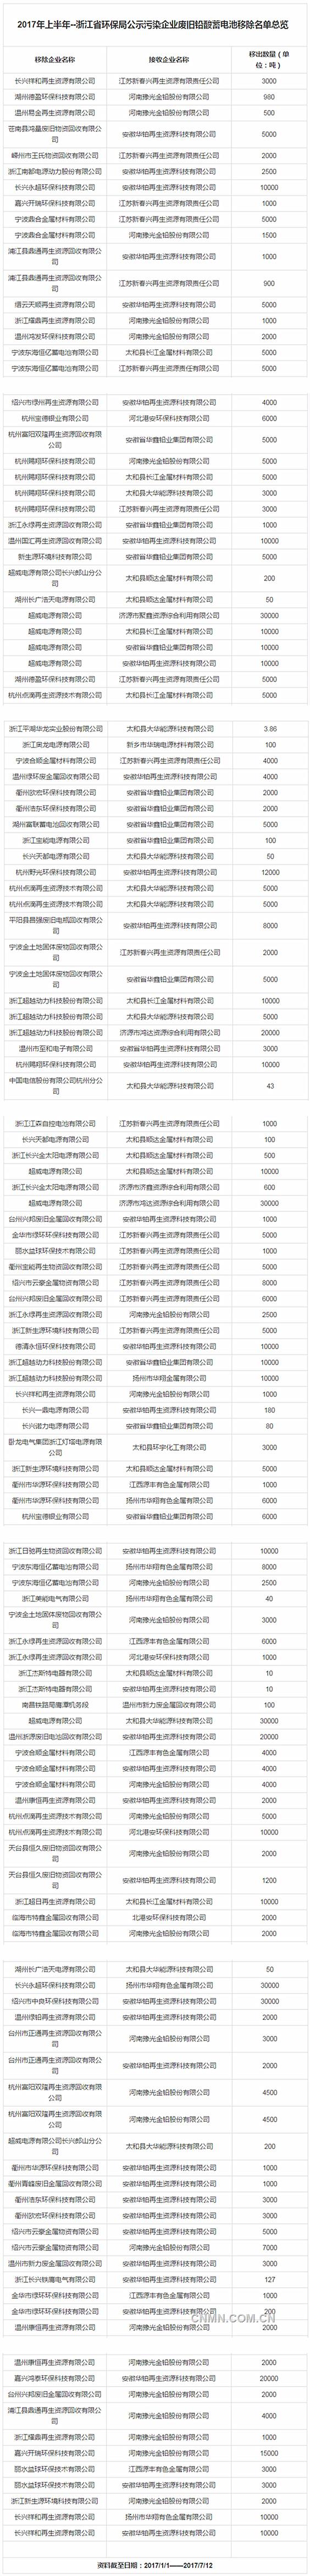 浙江省环保局公示上半年污染企业废旧铅酸蓄电池移除名单_金属资讯-上海有色网_副本